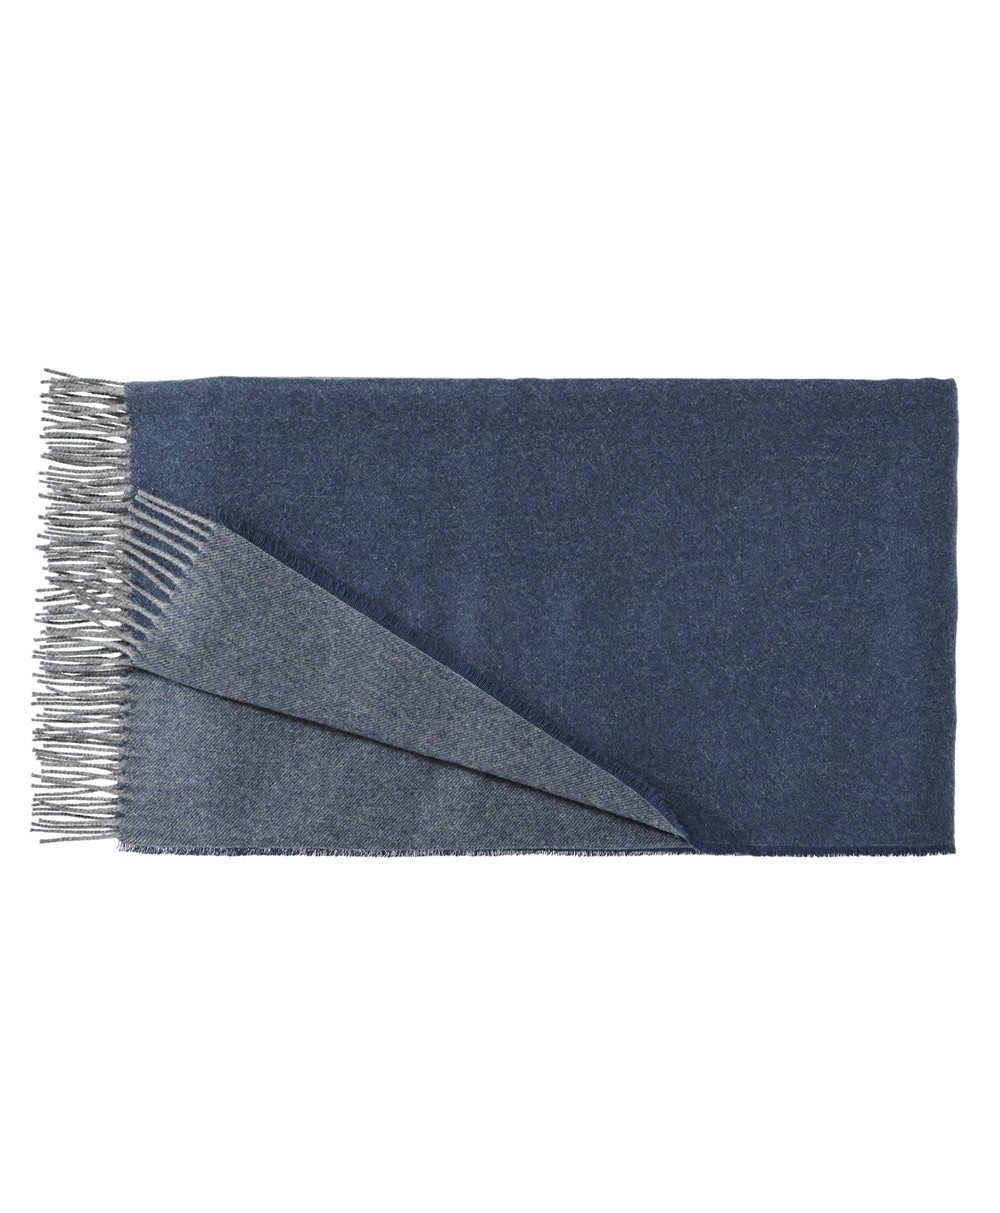 Hier abgebildet ist die Aspen Decke aus 100% Kaschmir von Christian Fischbacher – im RAUM concept store